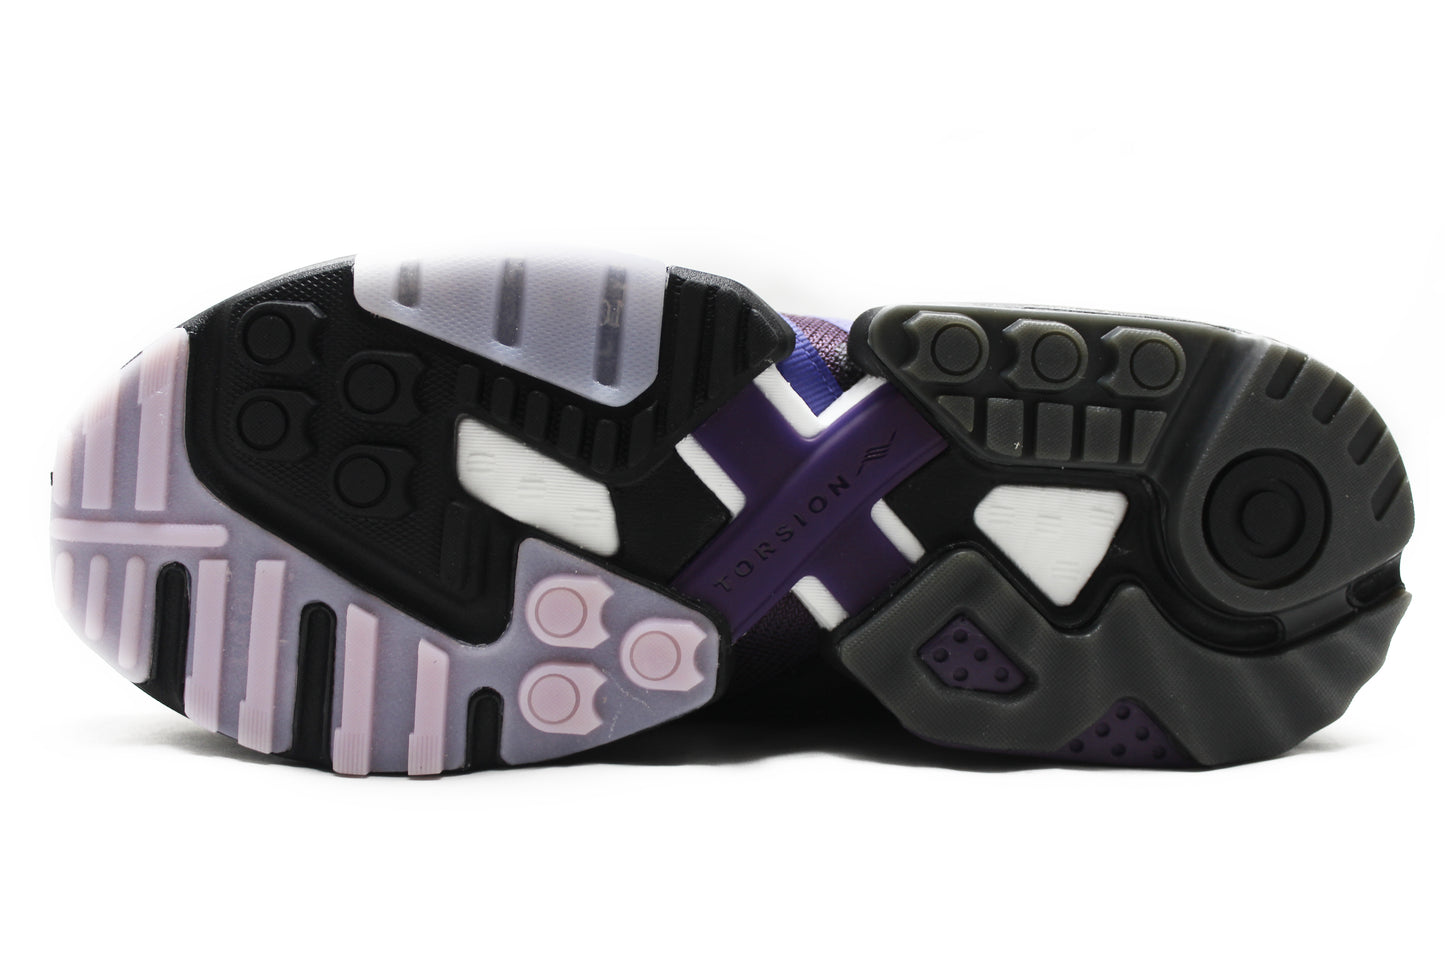 Packer Shoes x Adidas ZX Torsion "Mega Violet"